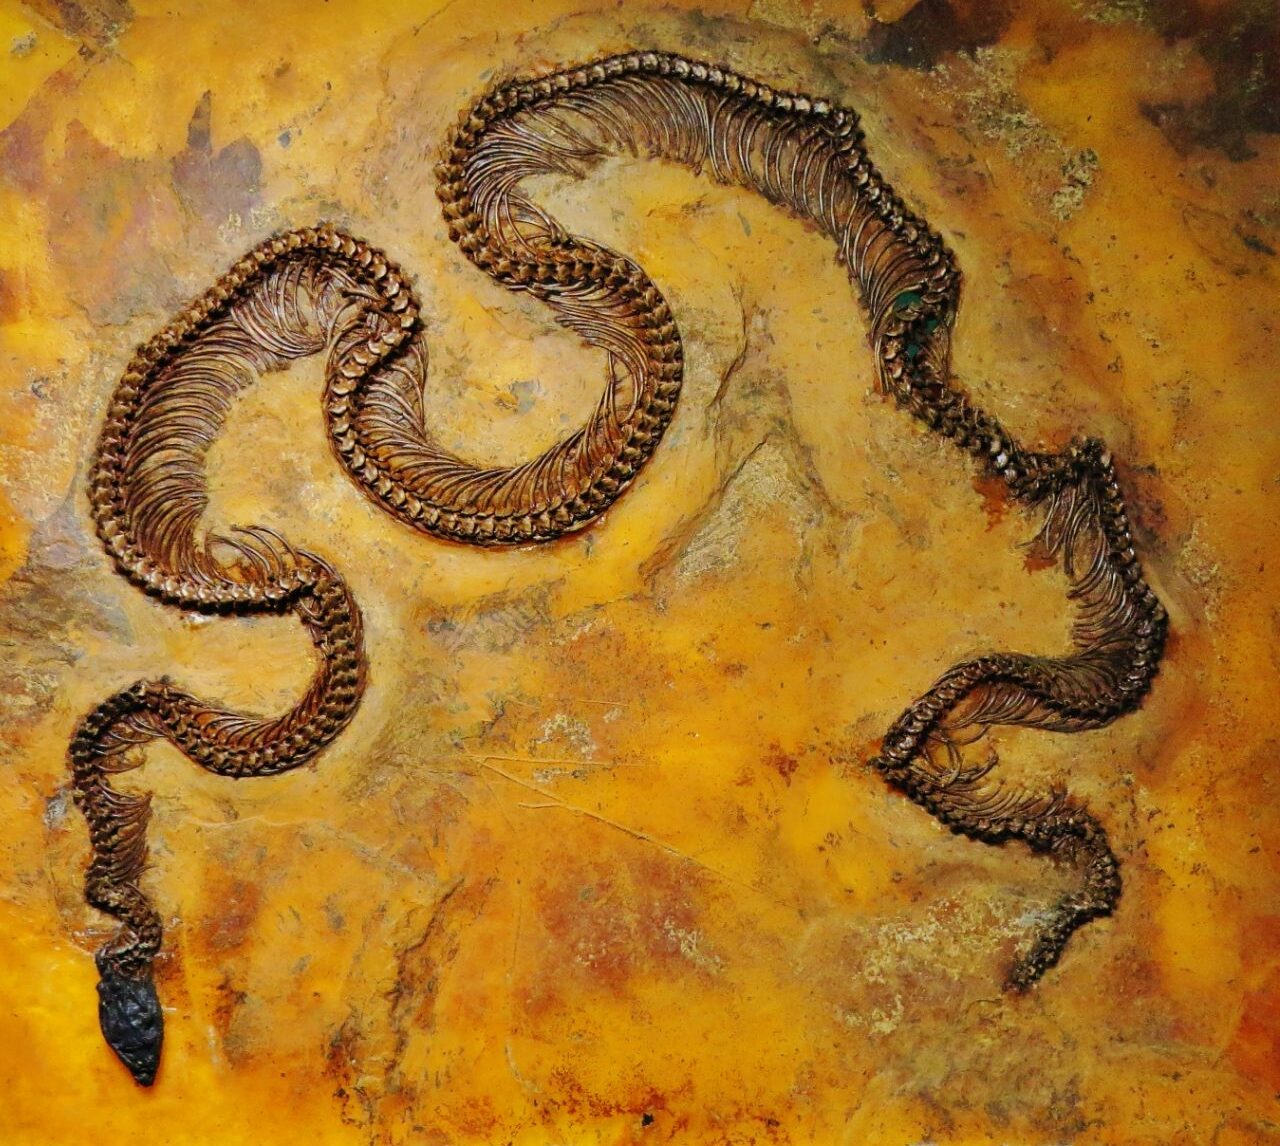 Messel Pit snake met een infrarood zicht